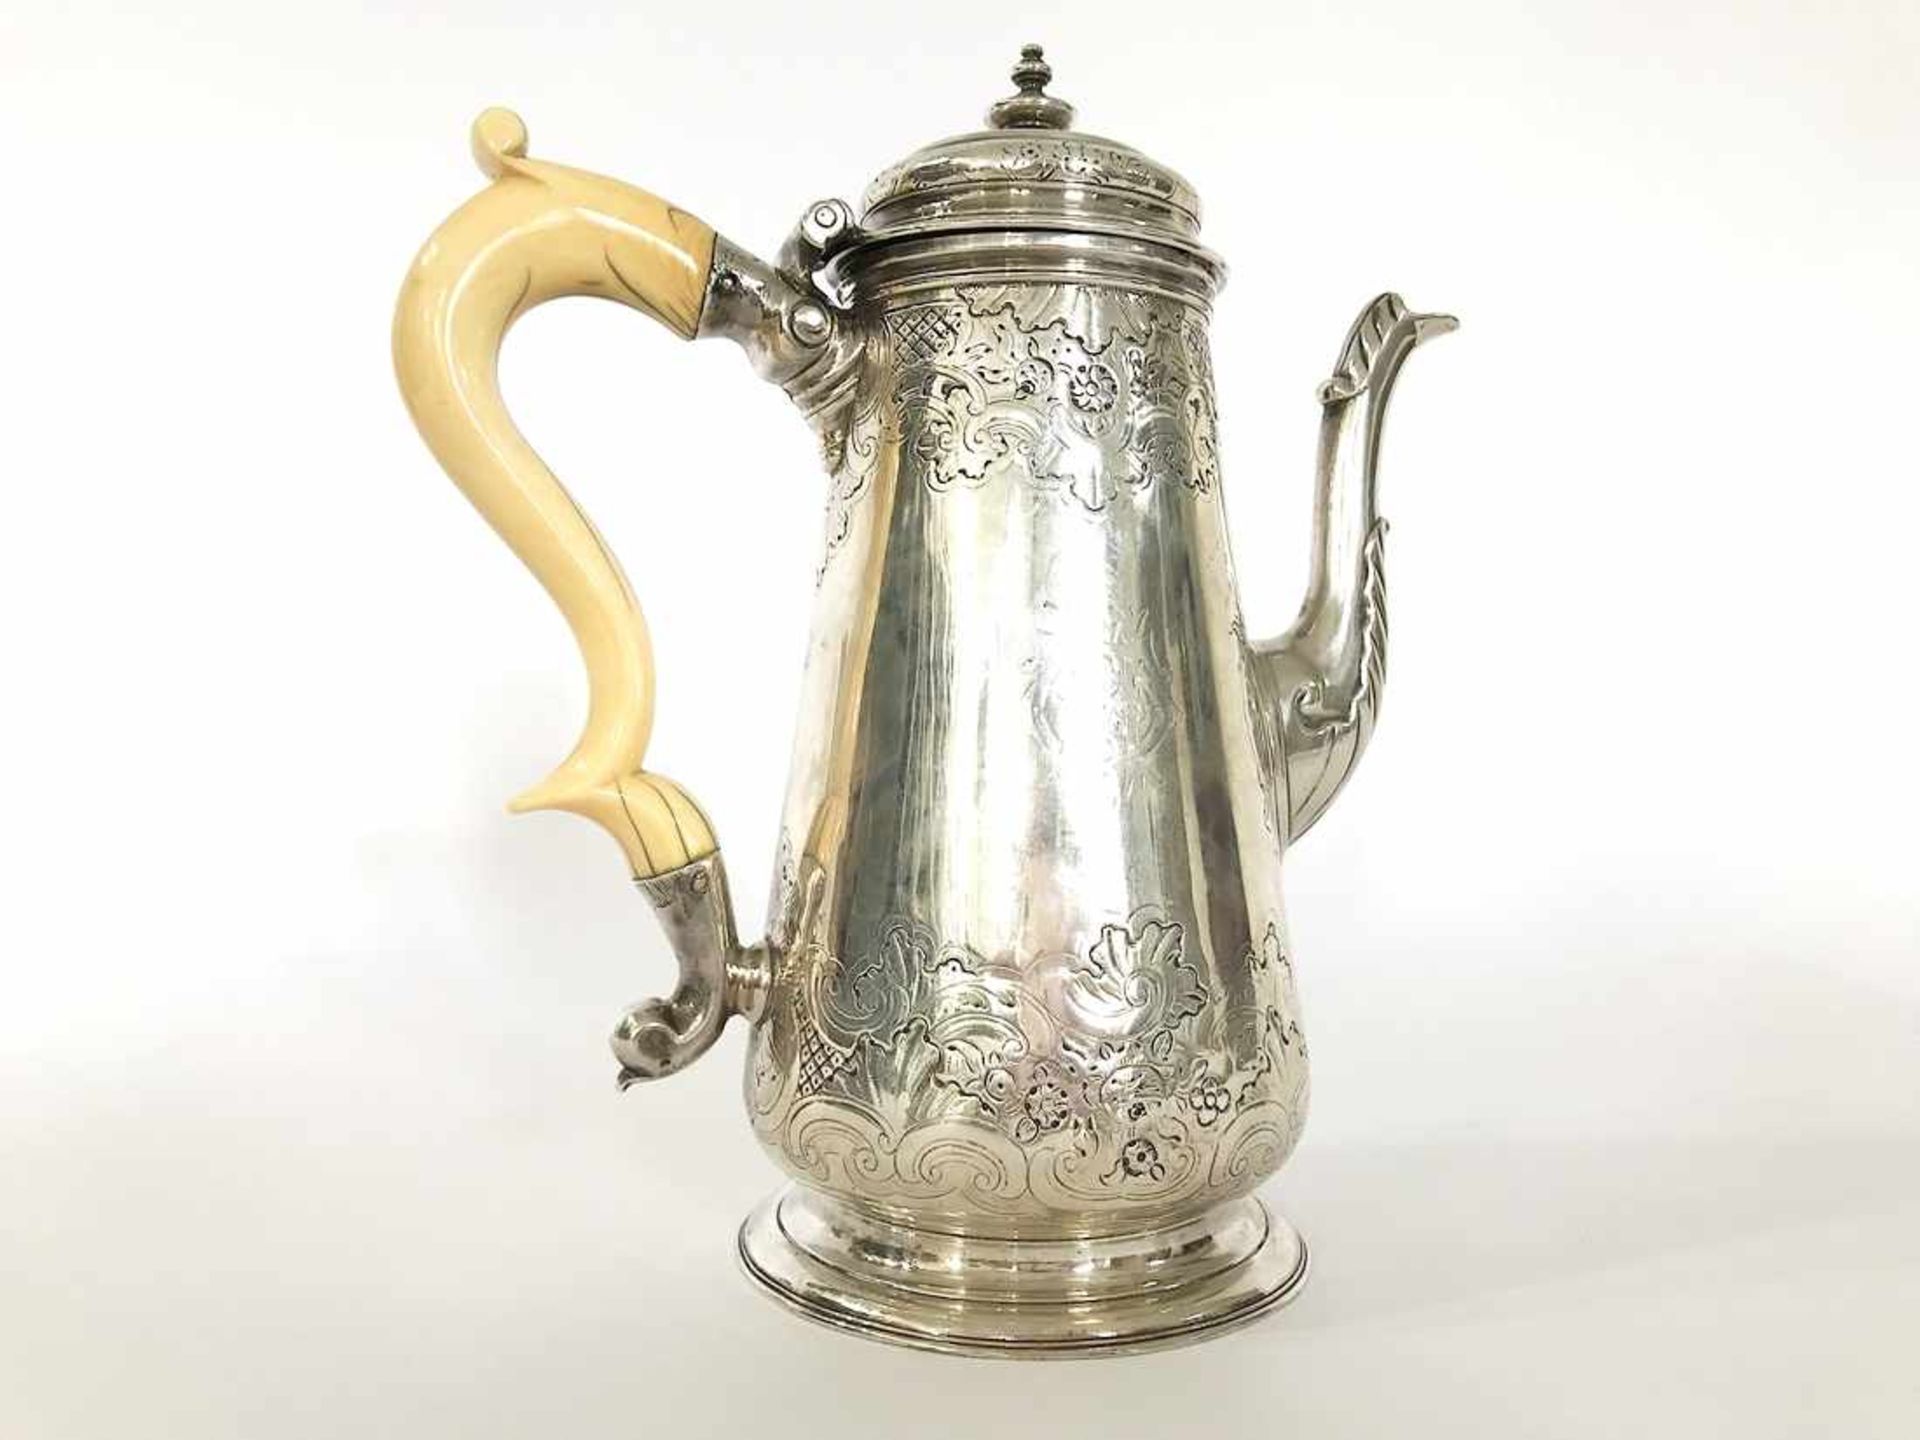 Kaffeekanne, 925er Silber, Silbermarke Kannenboden, Elfenbeinhenkel; handgetrieben, wohl London 1778 - Bild 2 aus 14